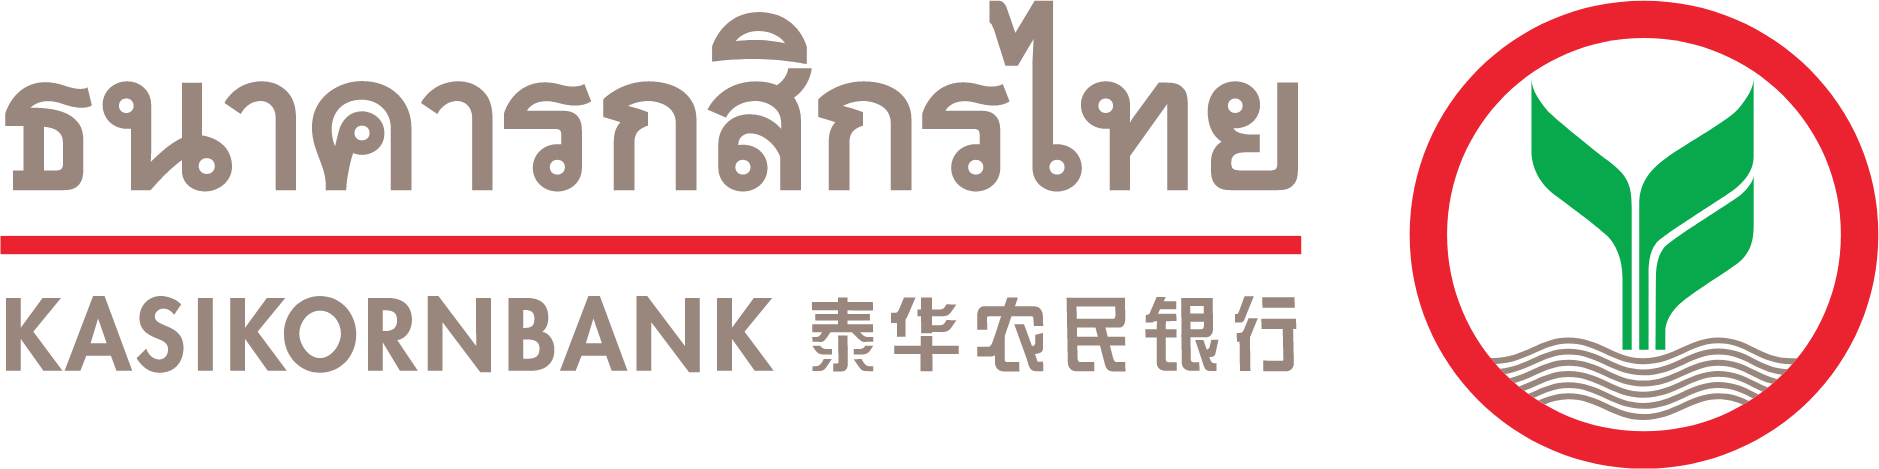 Kasikornbank logo large (transparent PNG)